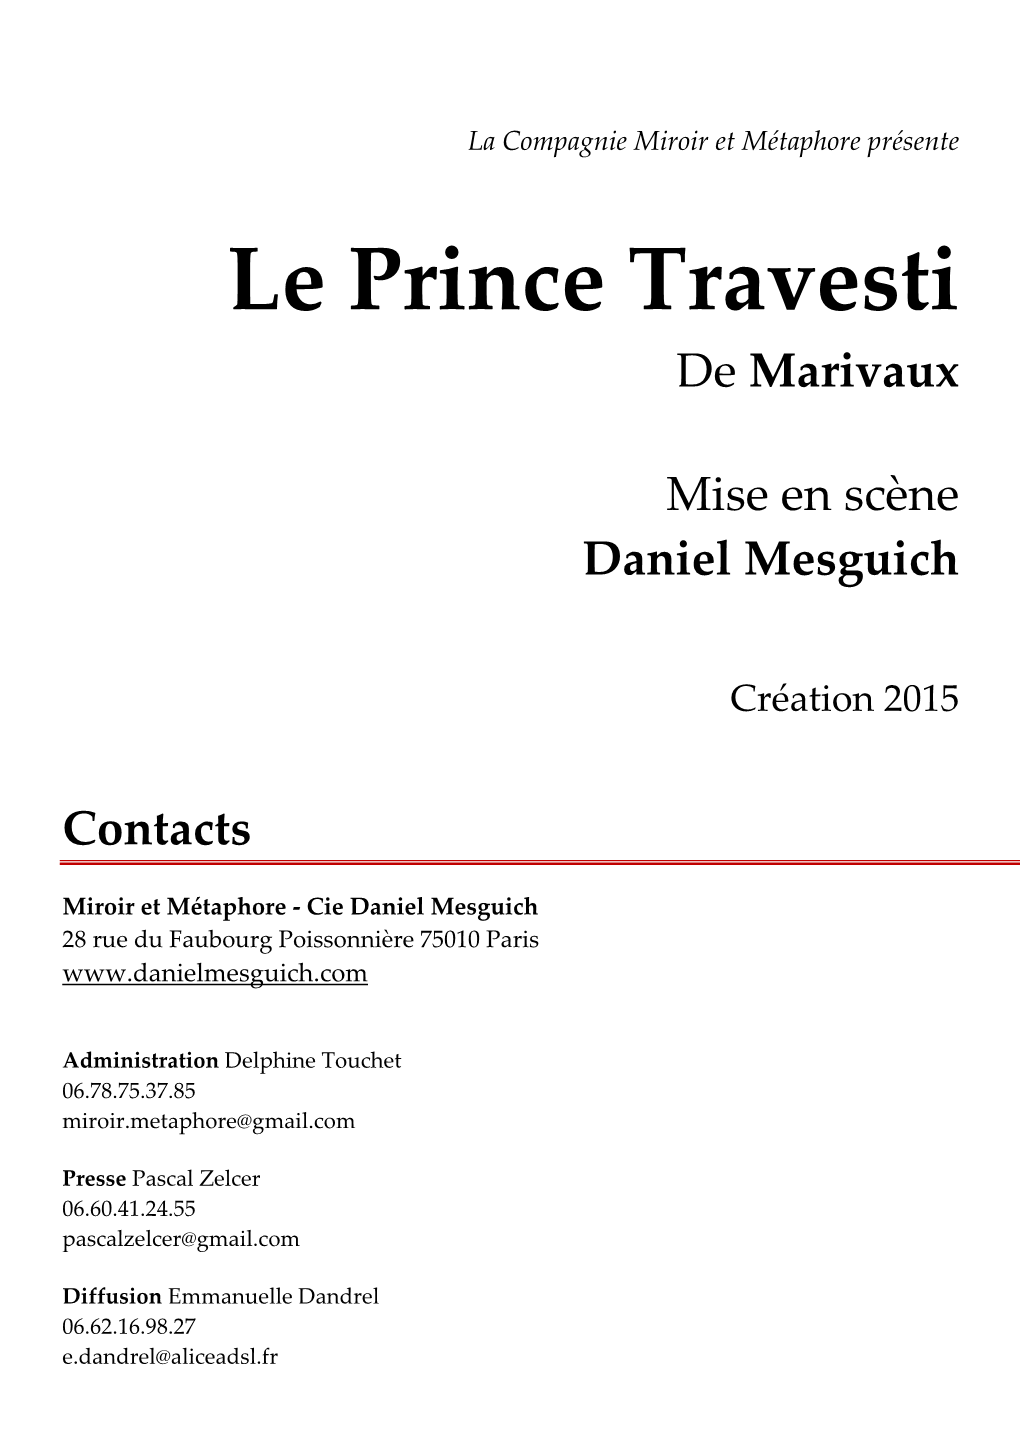 Le Prince Travesti Dossier Présentation